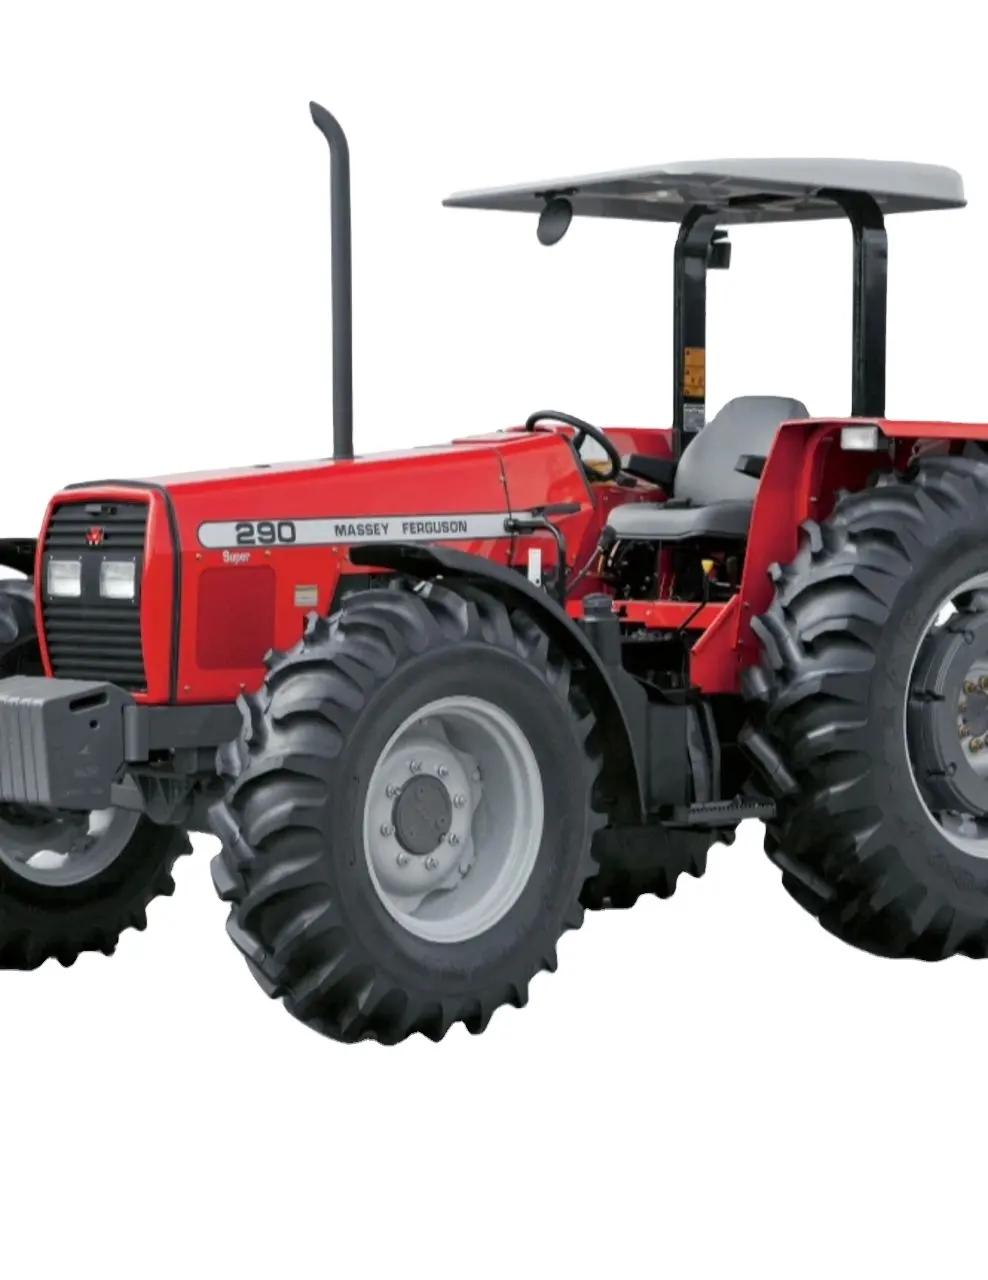 Качественный сельскохозяйственный трактор Massey Ferguson 390 MF 399 MF 290 4X4 для продажи по доступным ценам